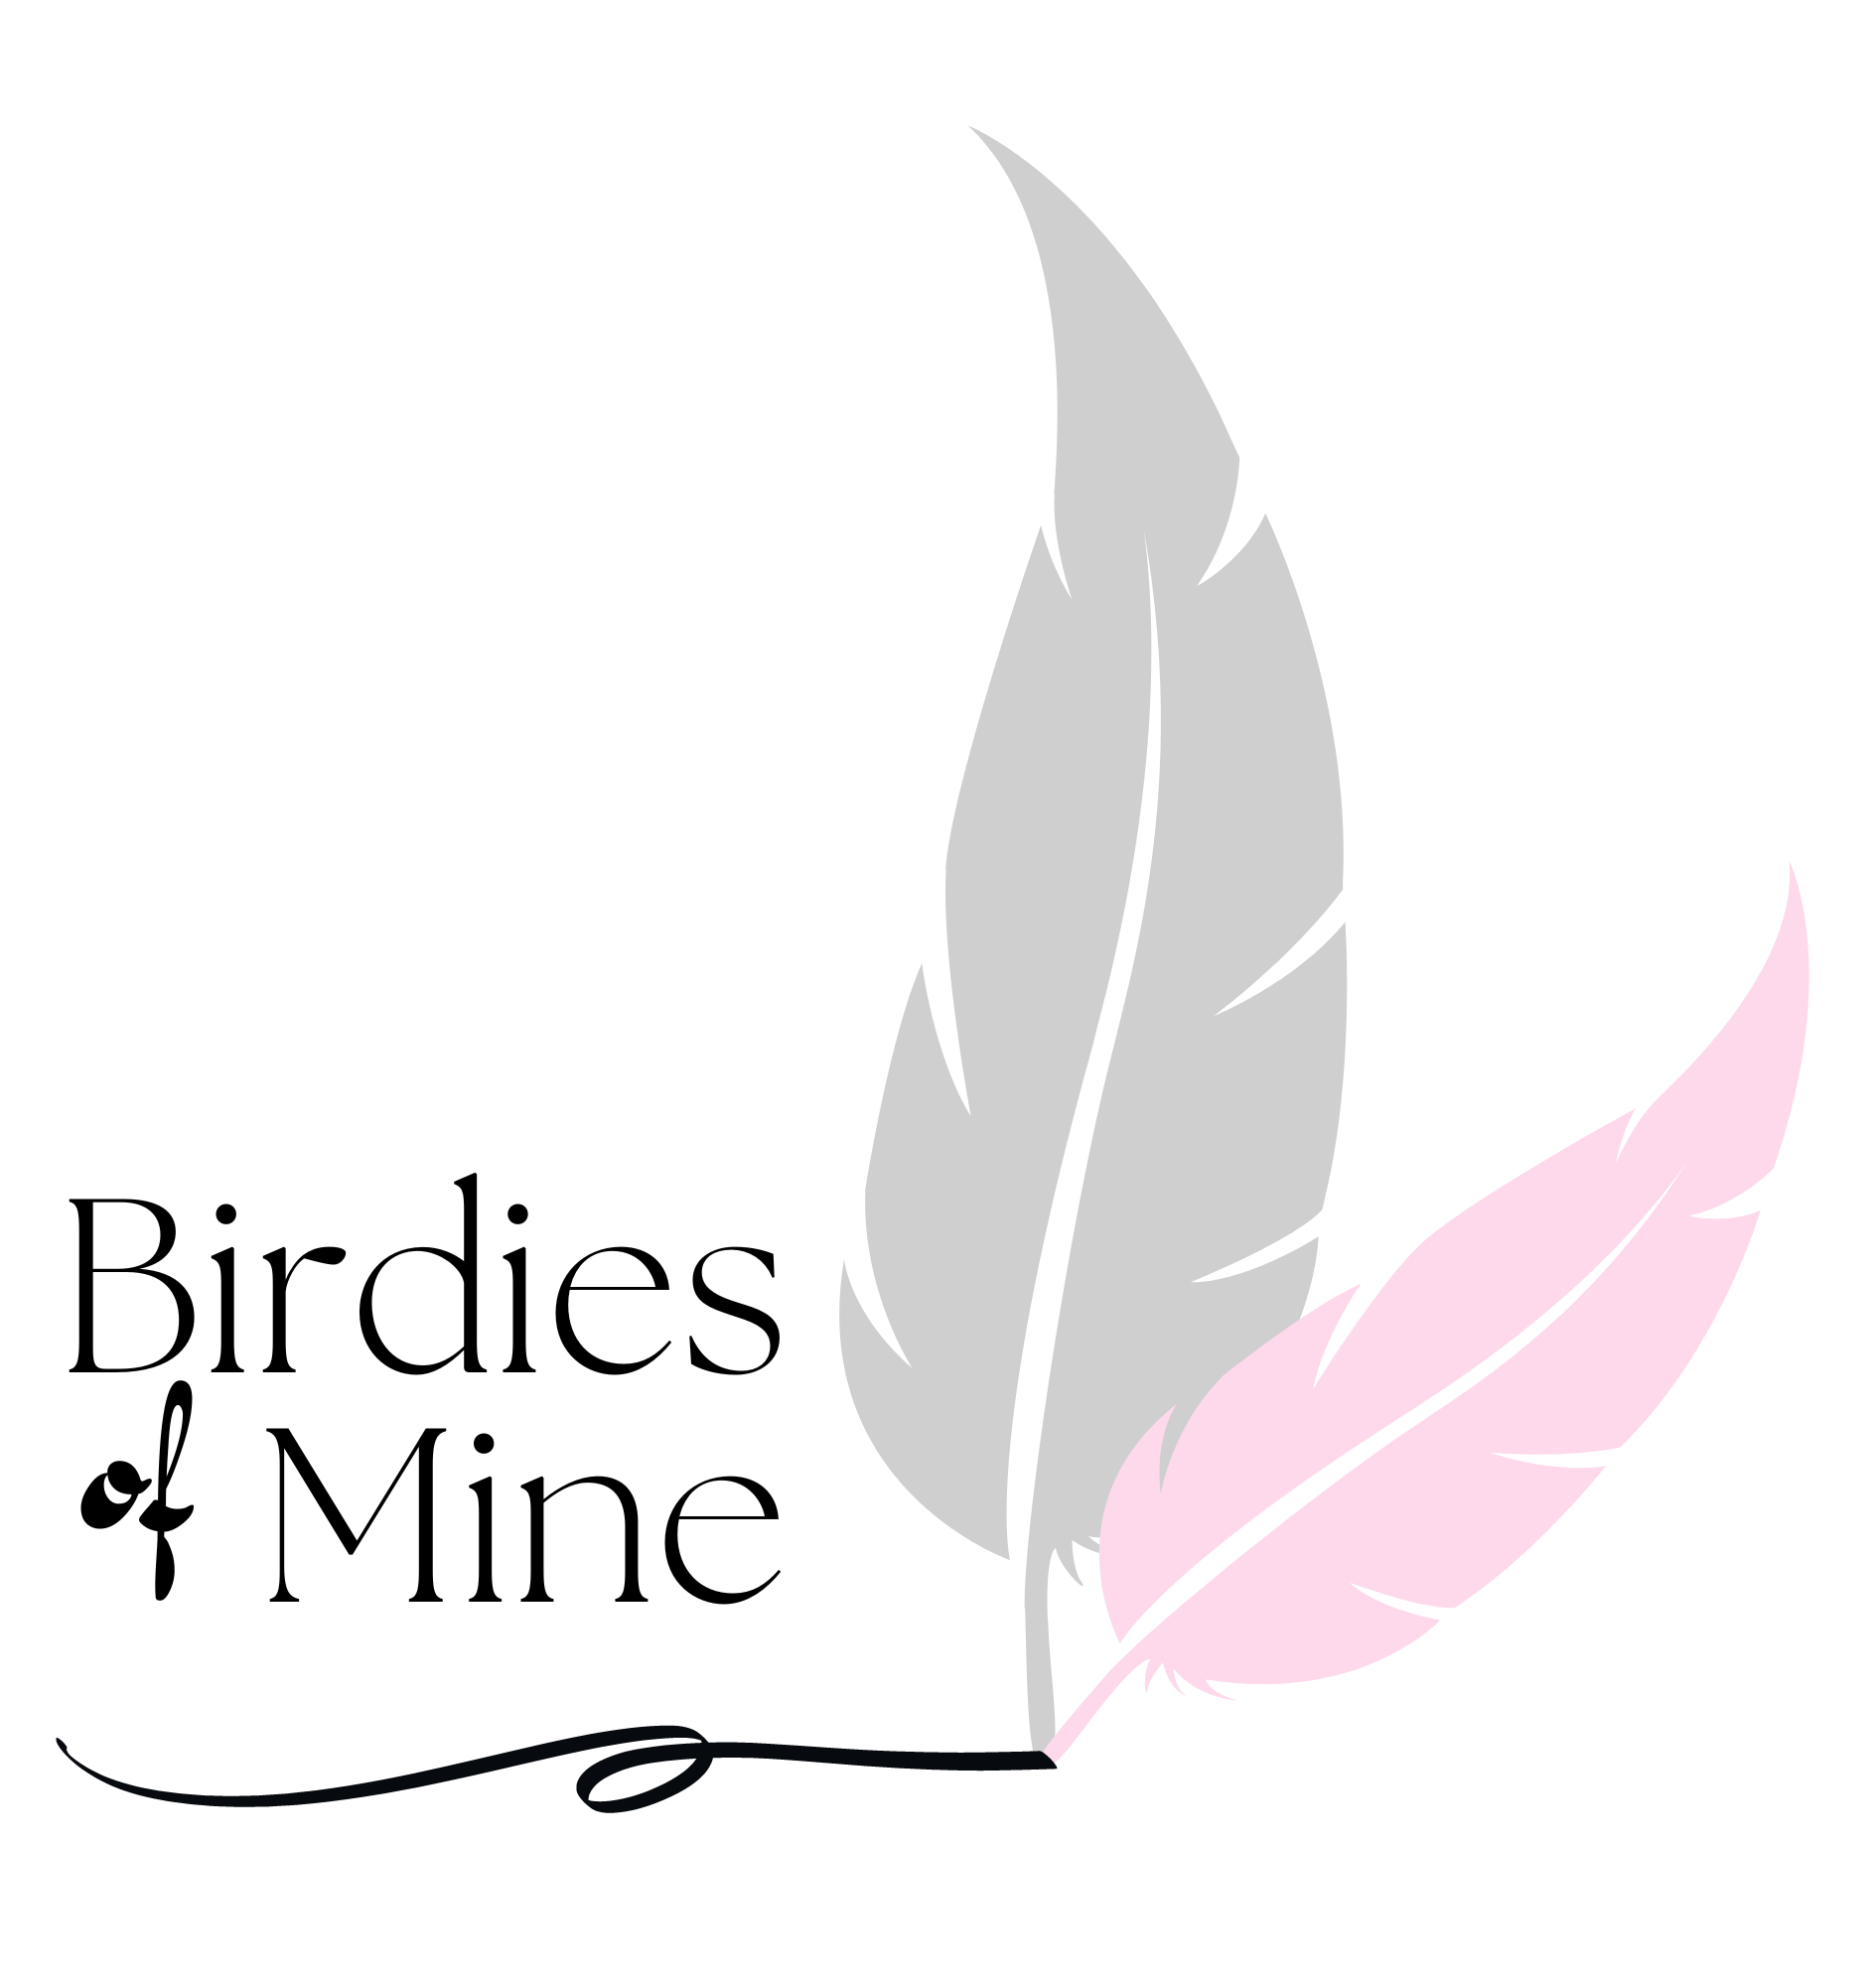 Birdies of Mine